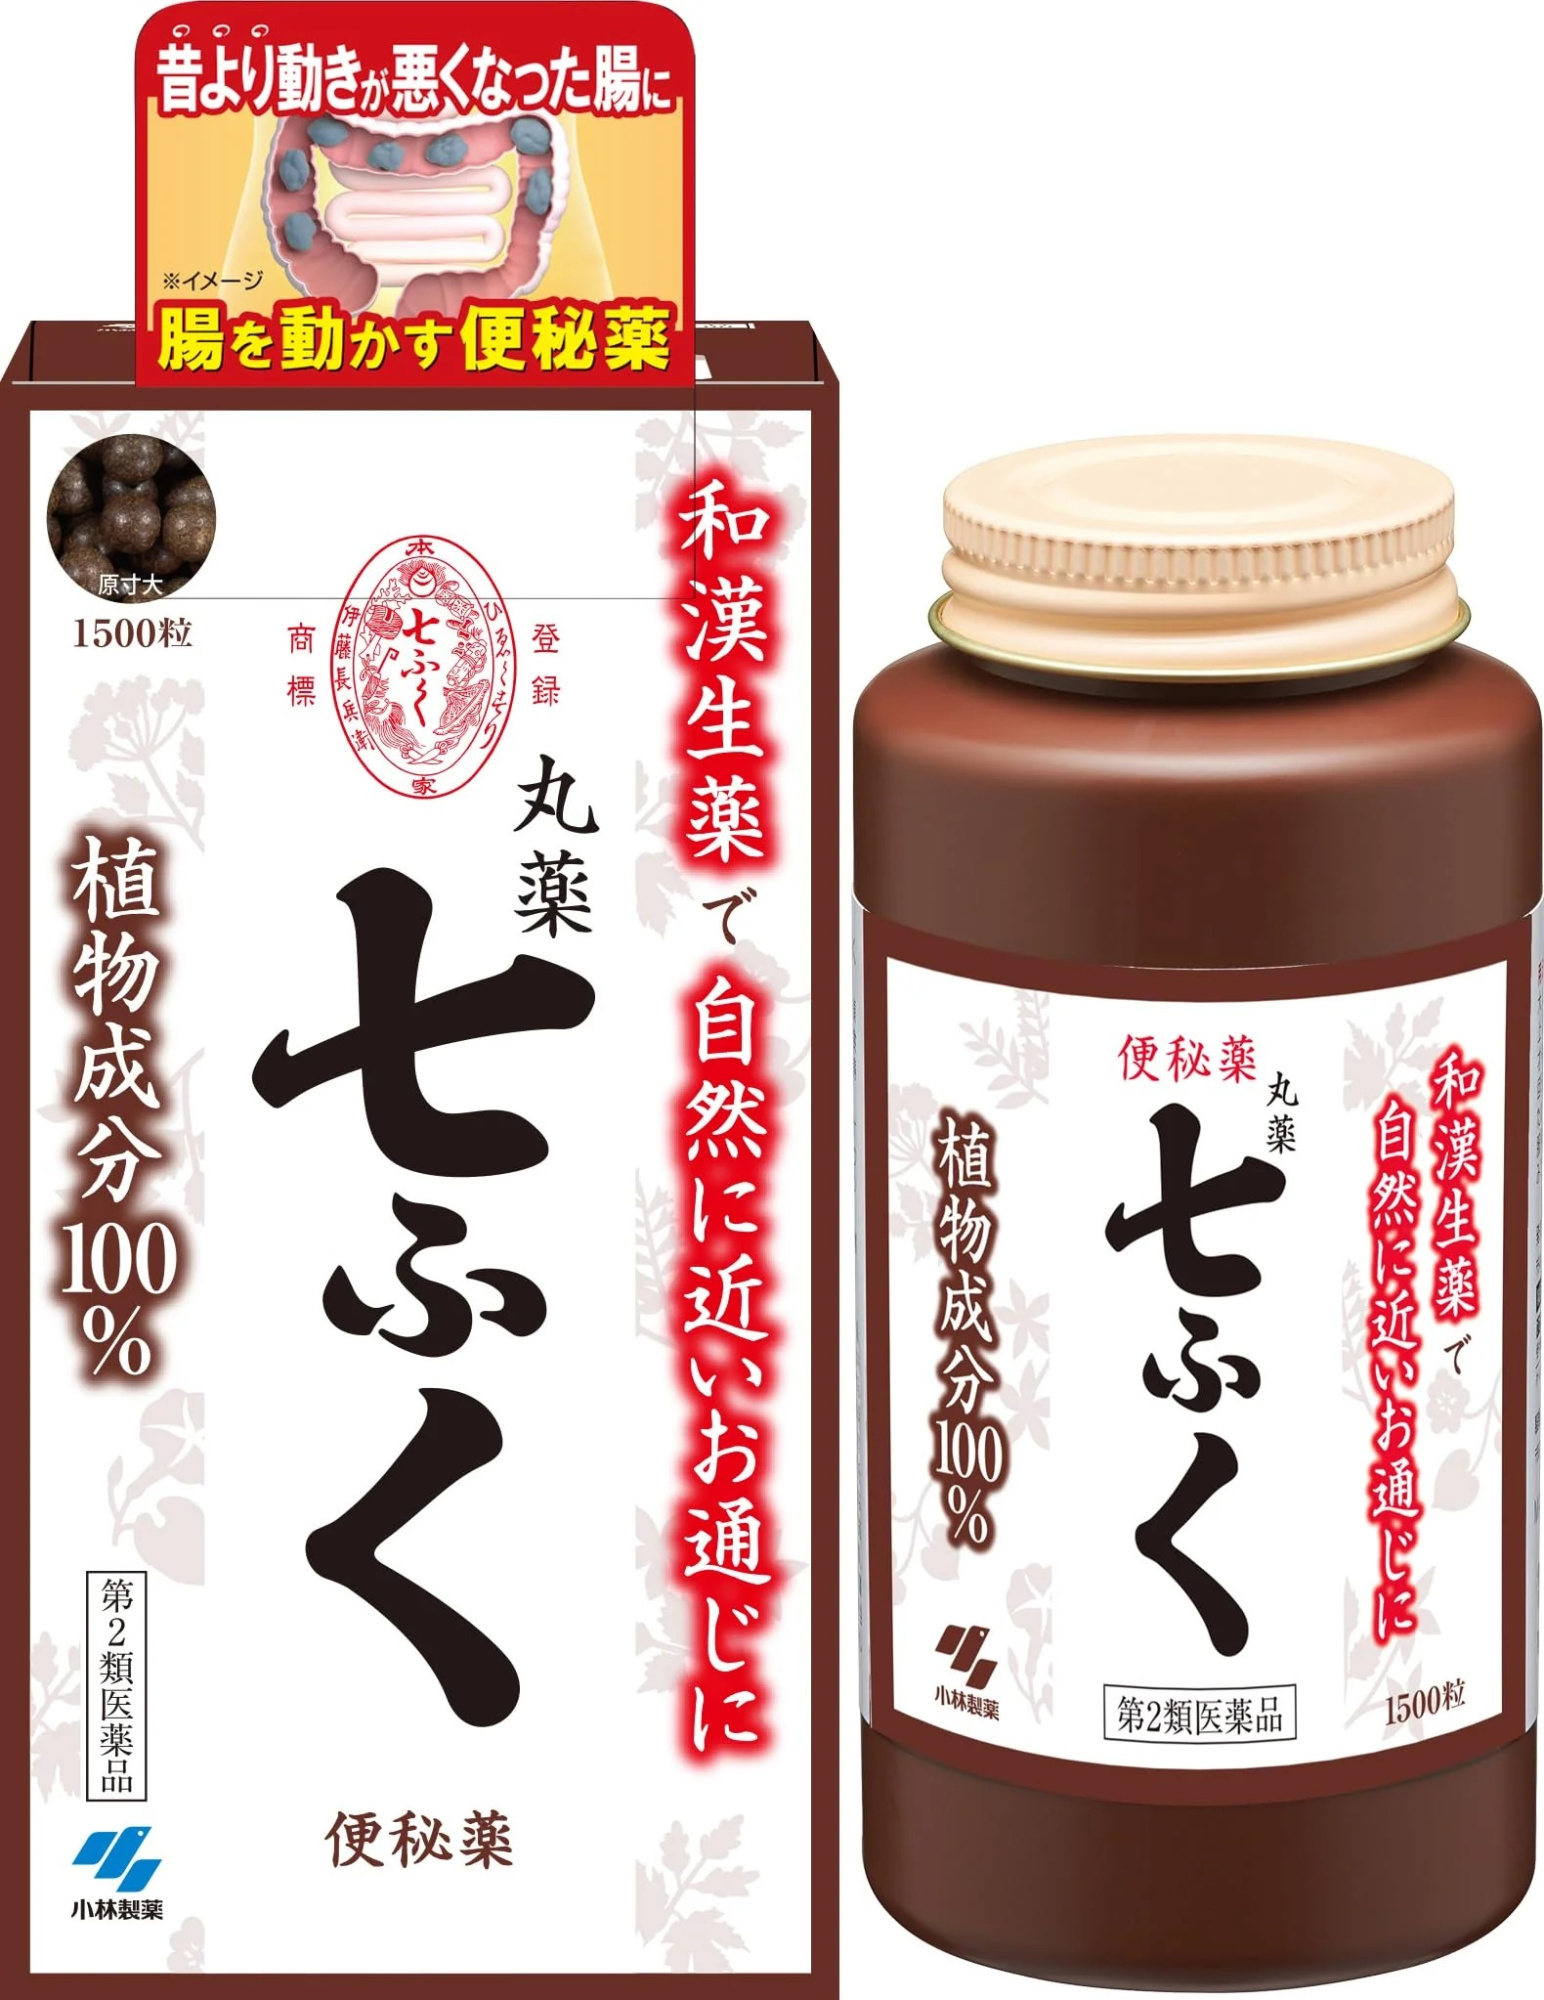 Натуральное слабительное средство Kobayashi Pharmaceutical Shichifuku